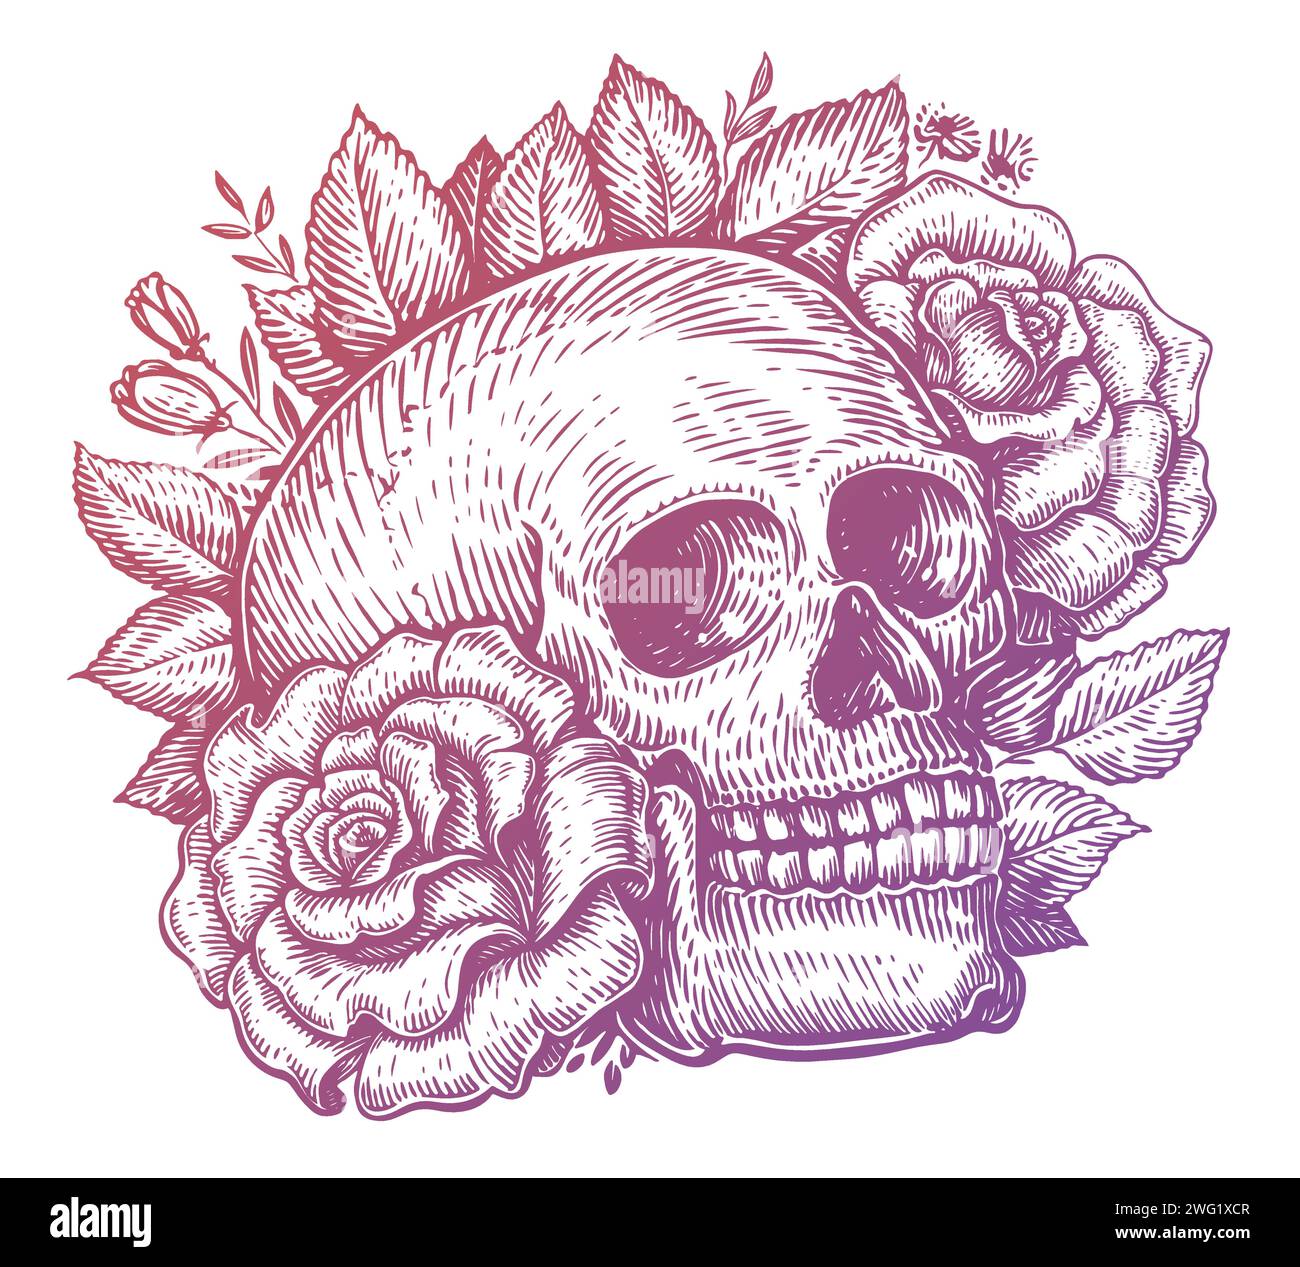 Cranio umano e rose con foglie e piante. Disegno a mano illustrazione vettoriale vintage Illustrazione Vettoriale